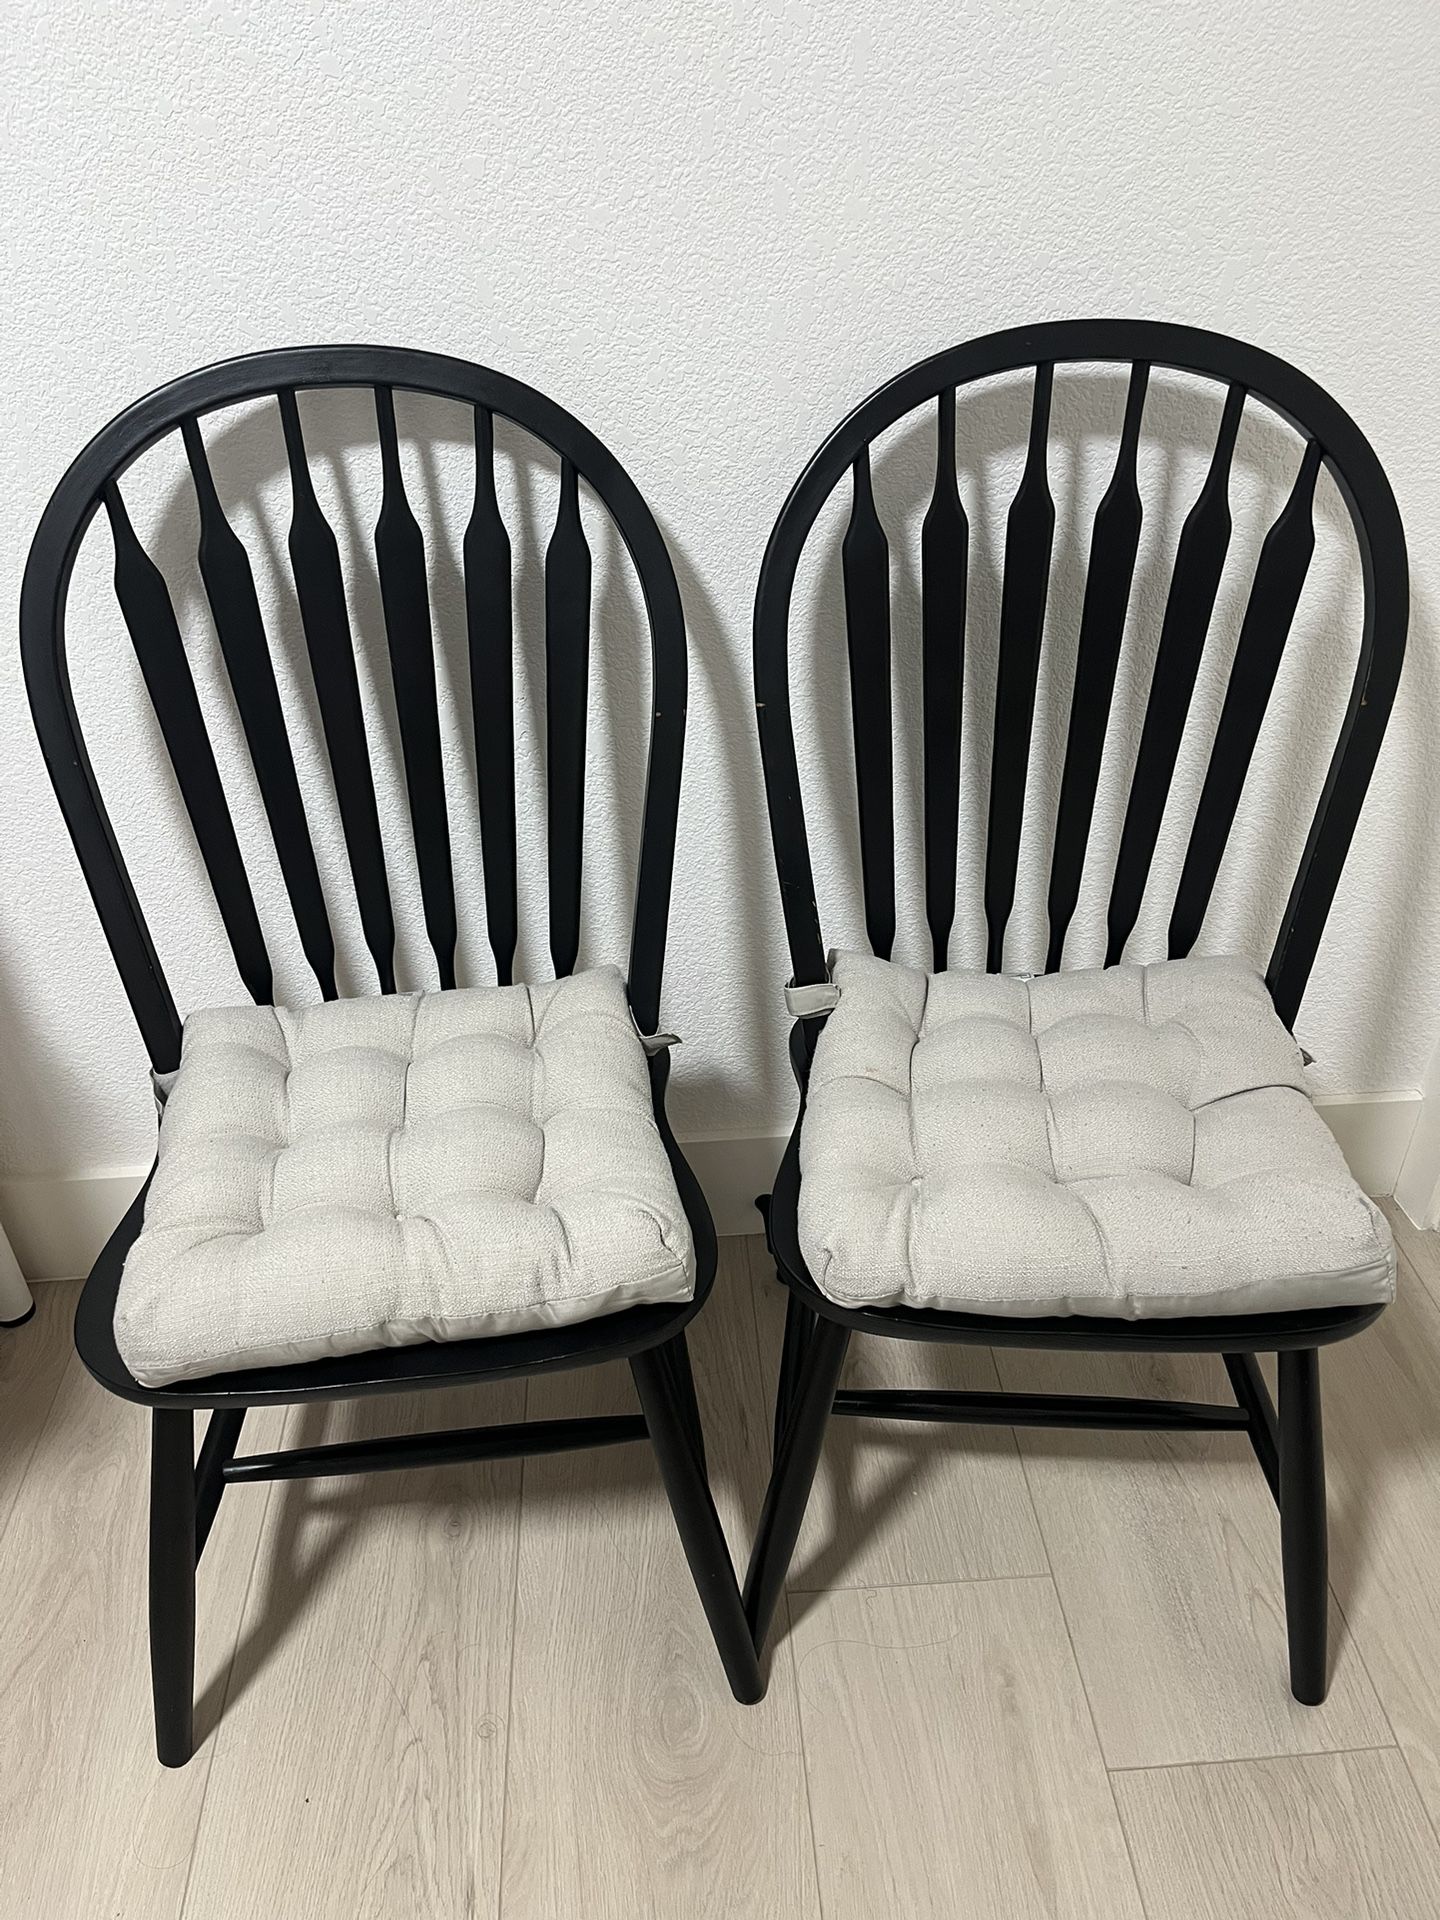 2 Chair 